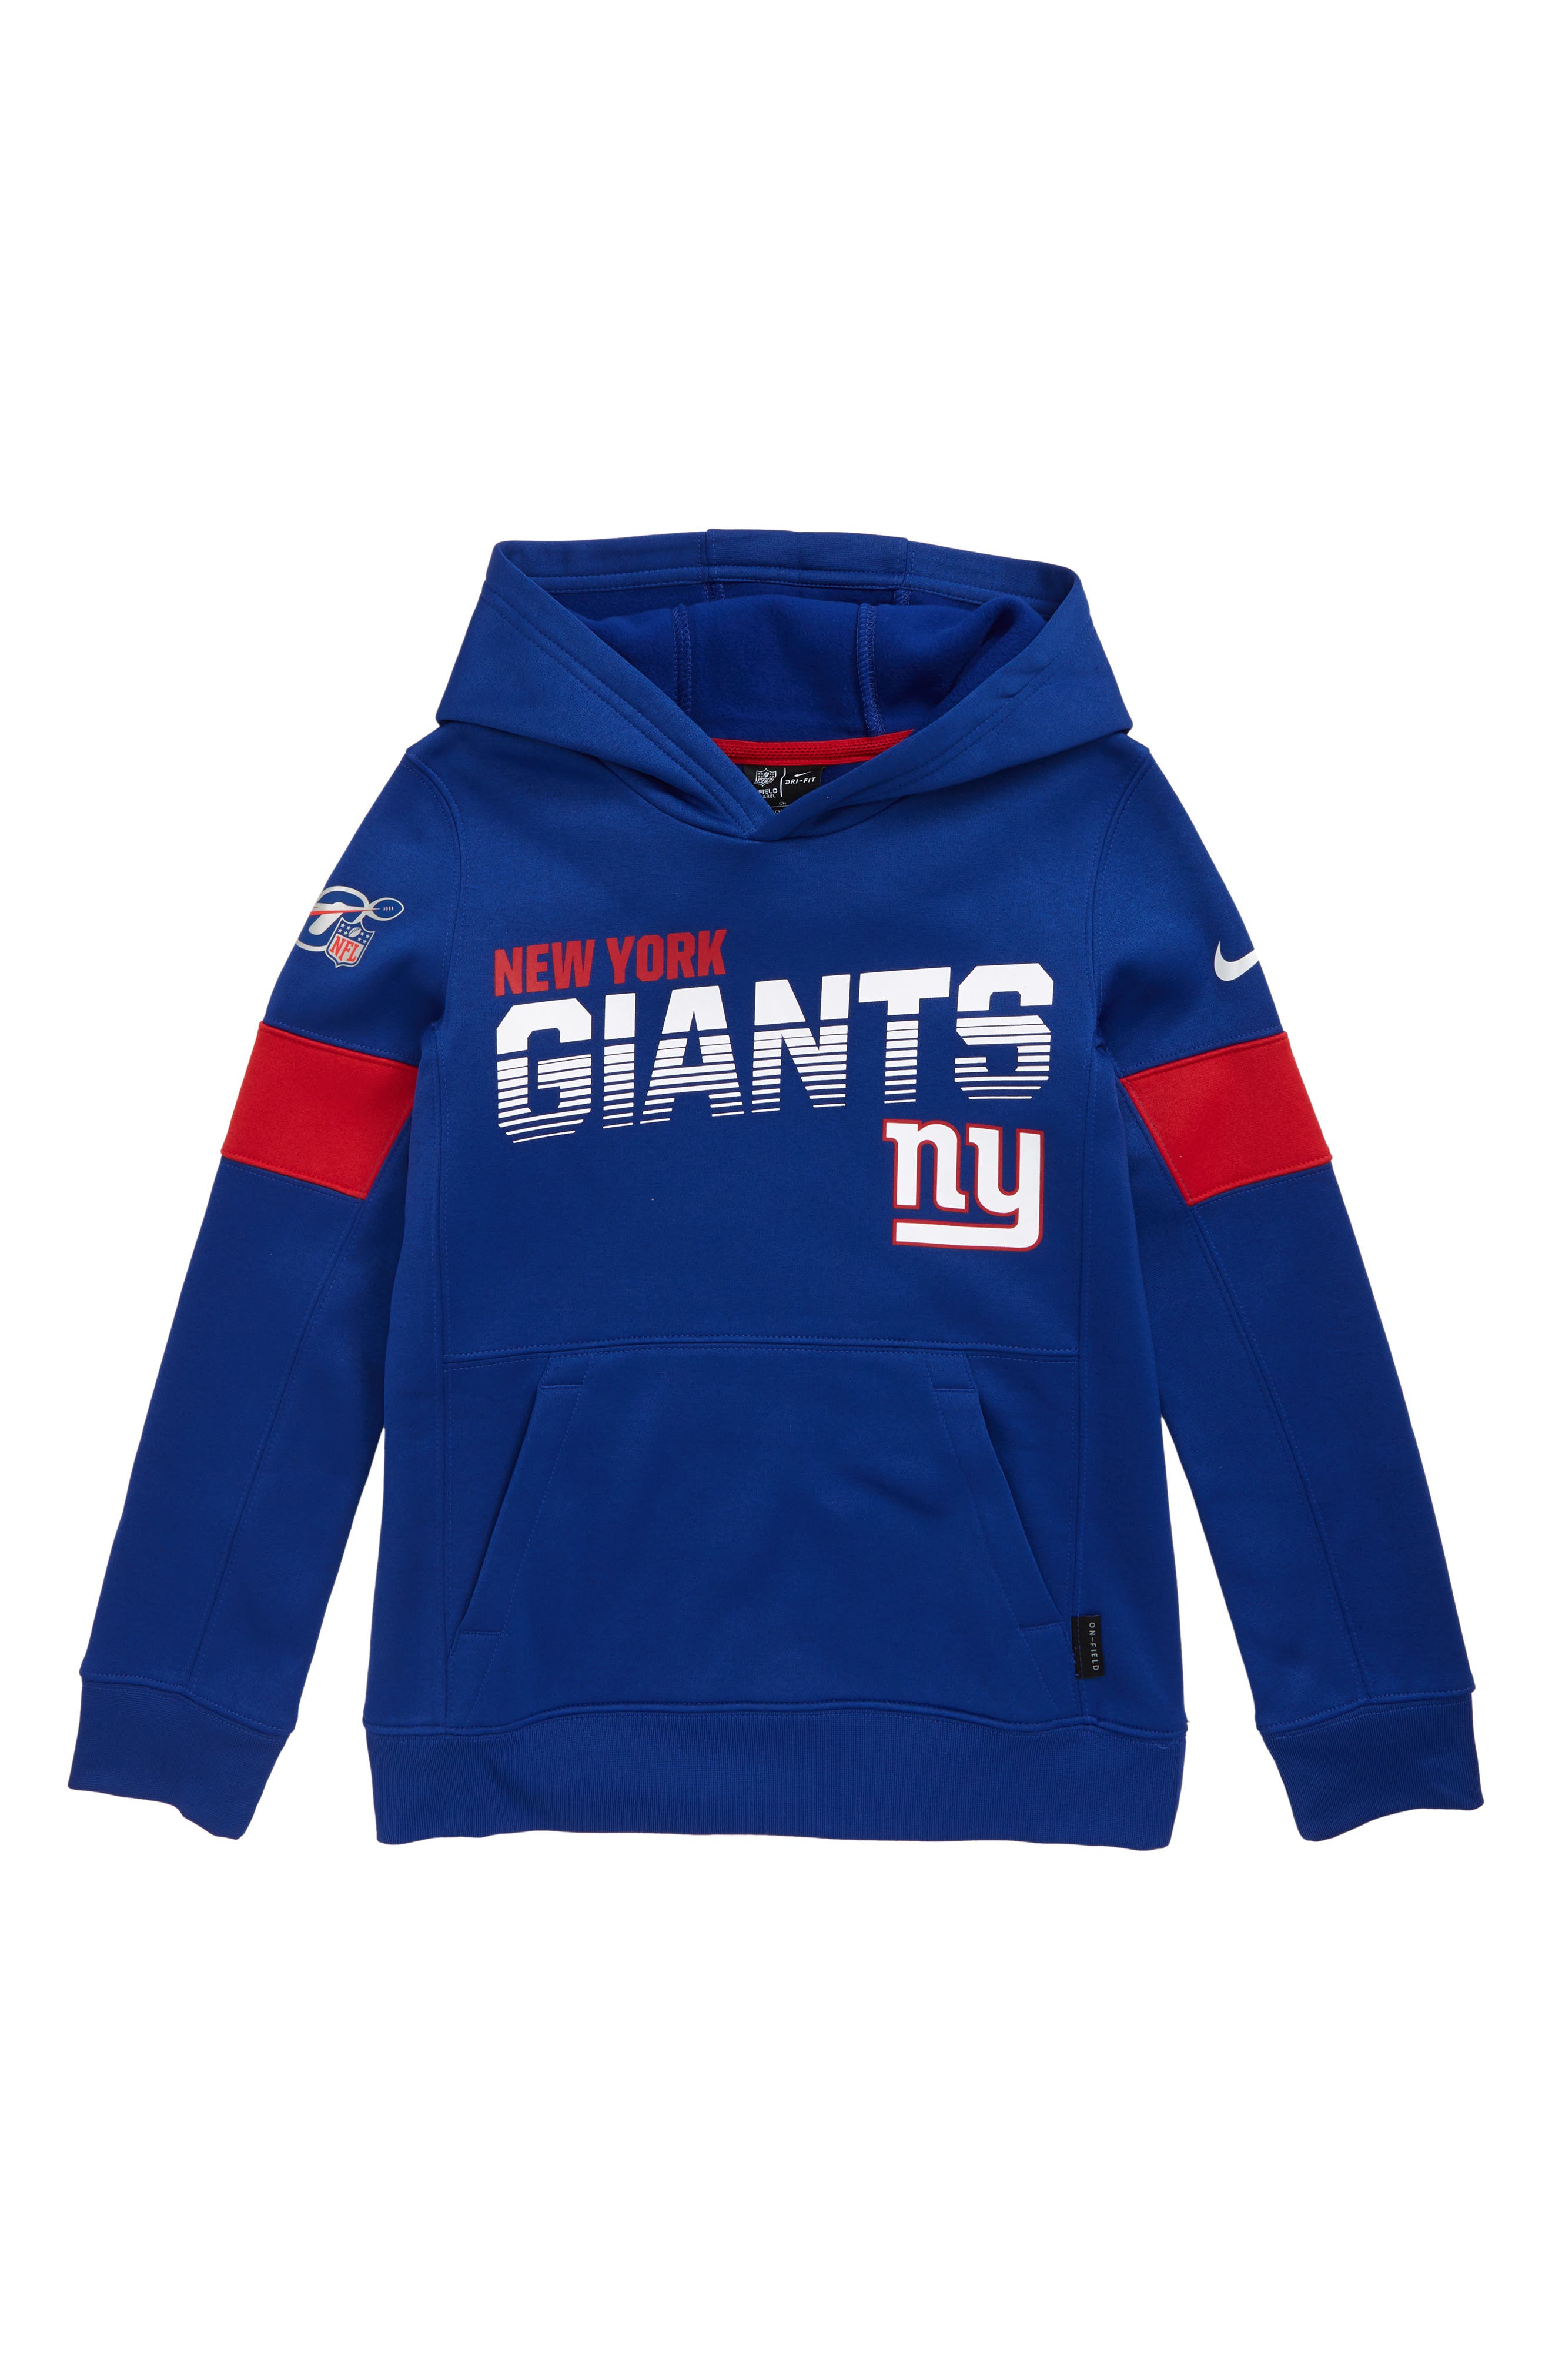 ny giants toddler sweatshirt